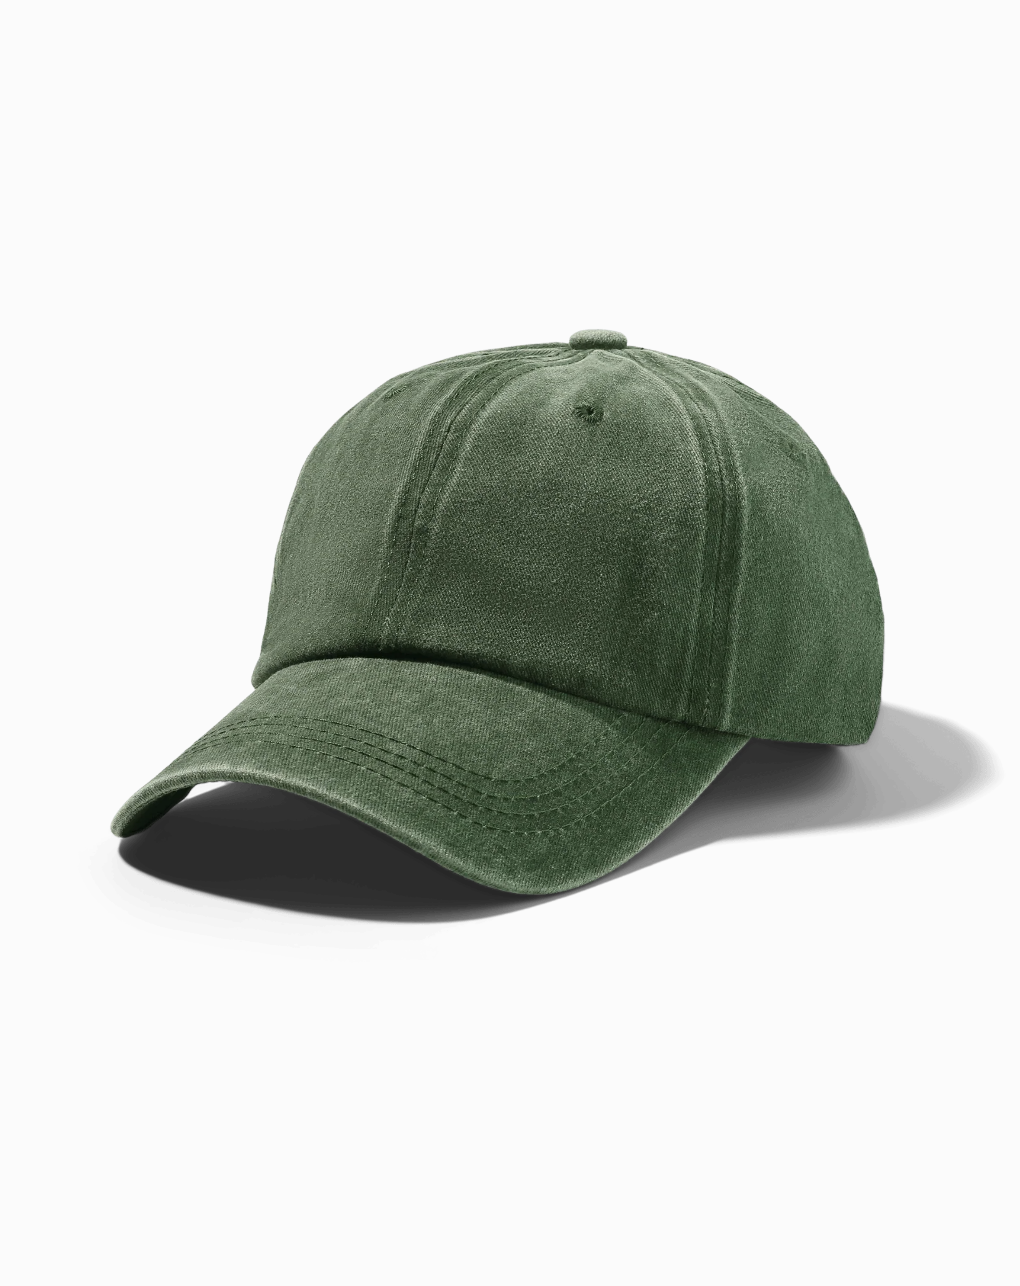 Classic Cap - Emerald Green